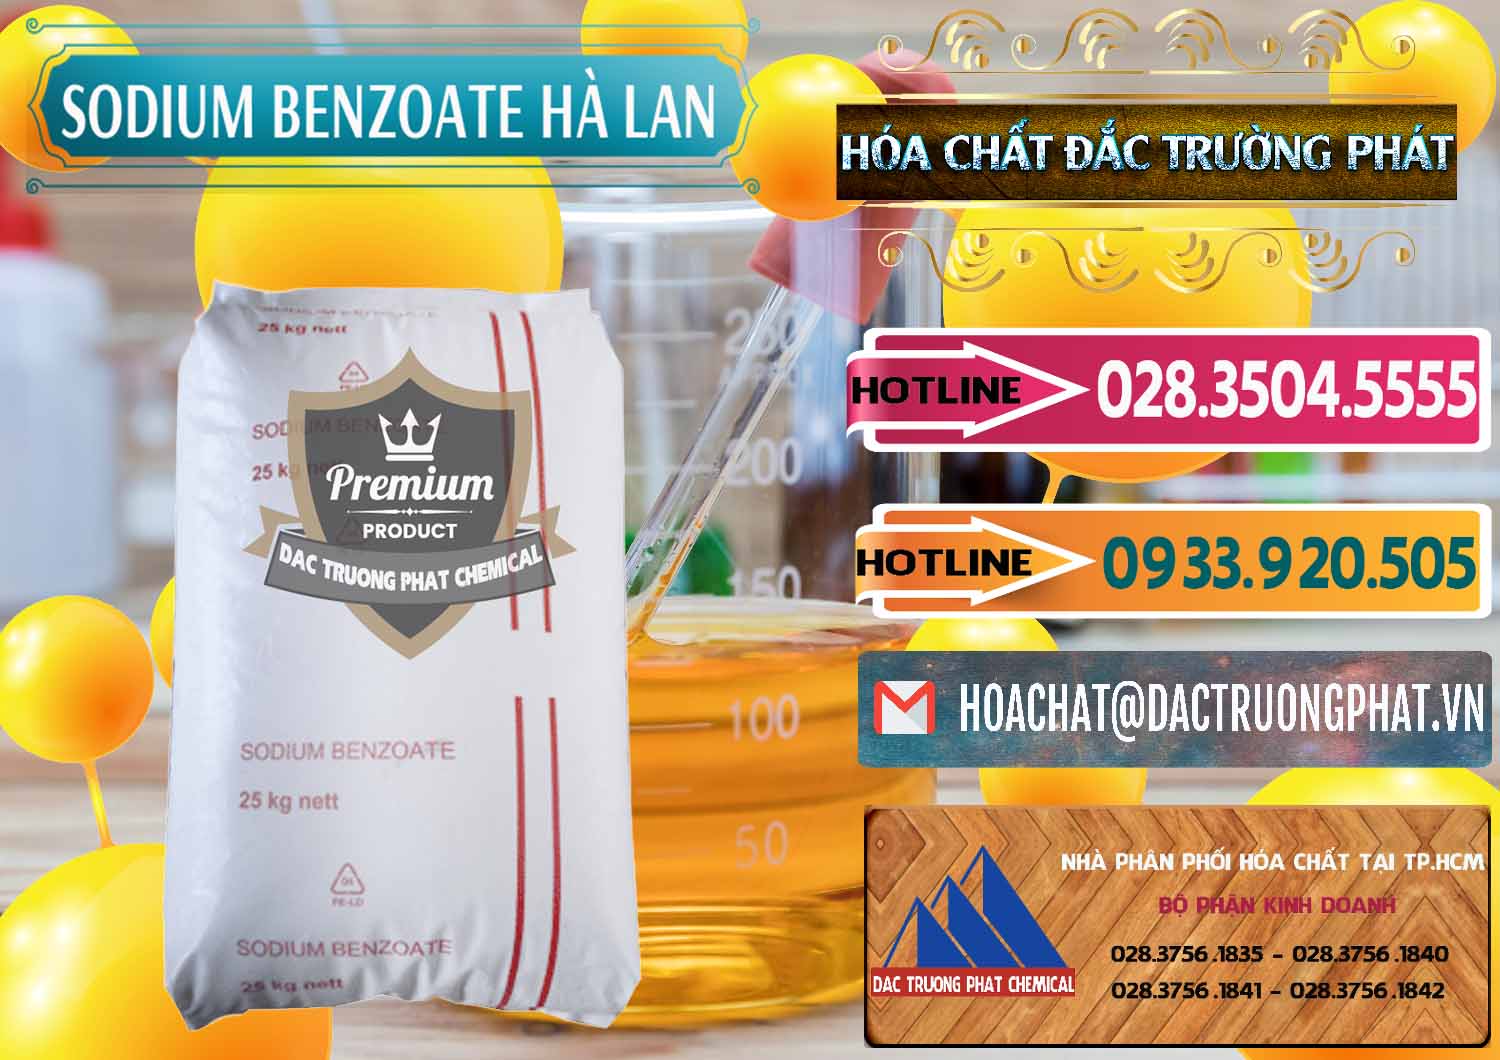 Cty chuyên nhập khẩu _ bán Sodium Benzoate - Mốc Bột Chữ Cam Hà Lan Netherlands - 0360 - Cty chuyên phân phối ( nhập khẩu ) hóa chất tại TP.HCM - dactruongphat.vn